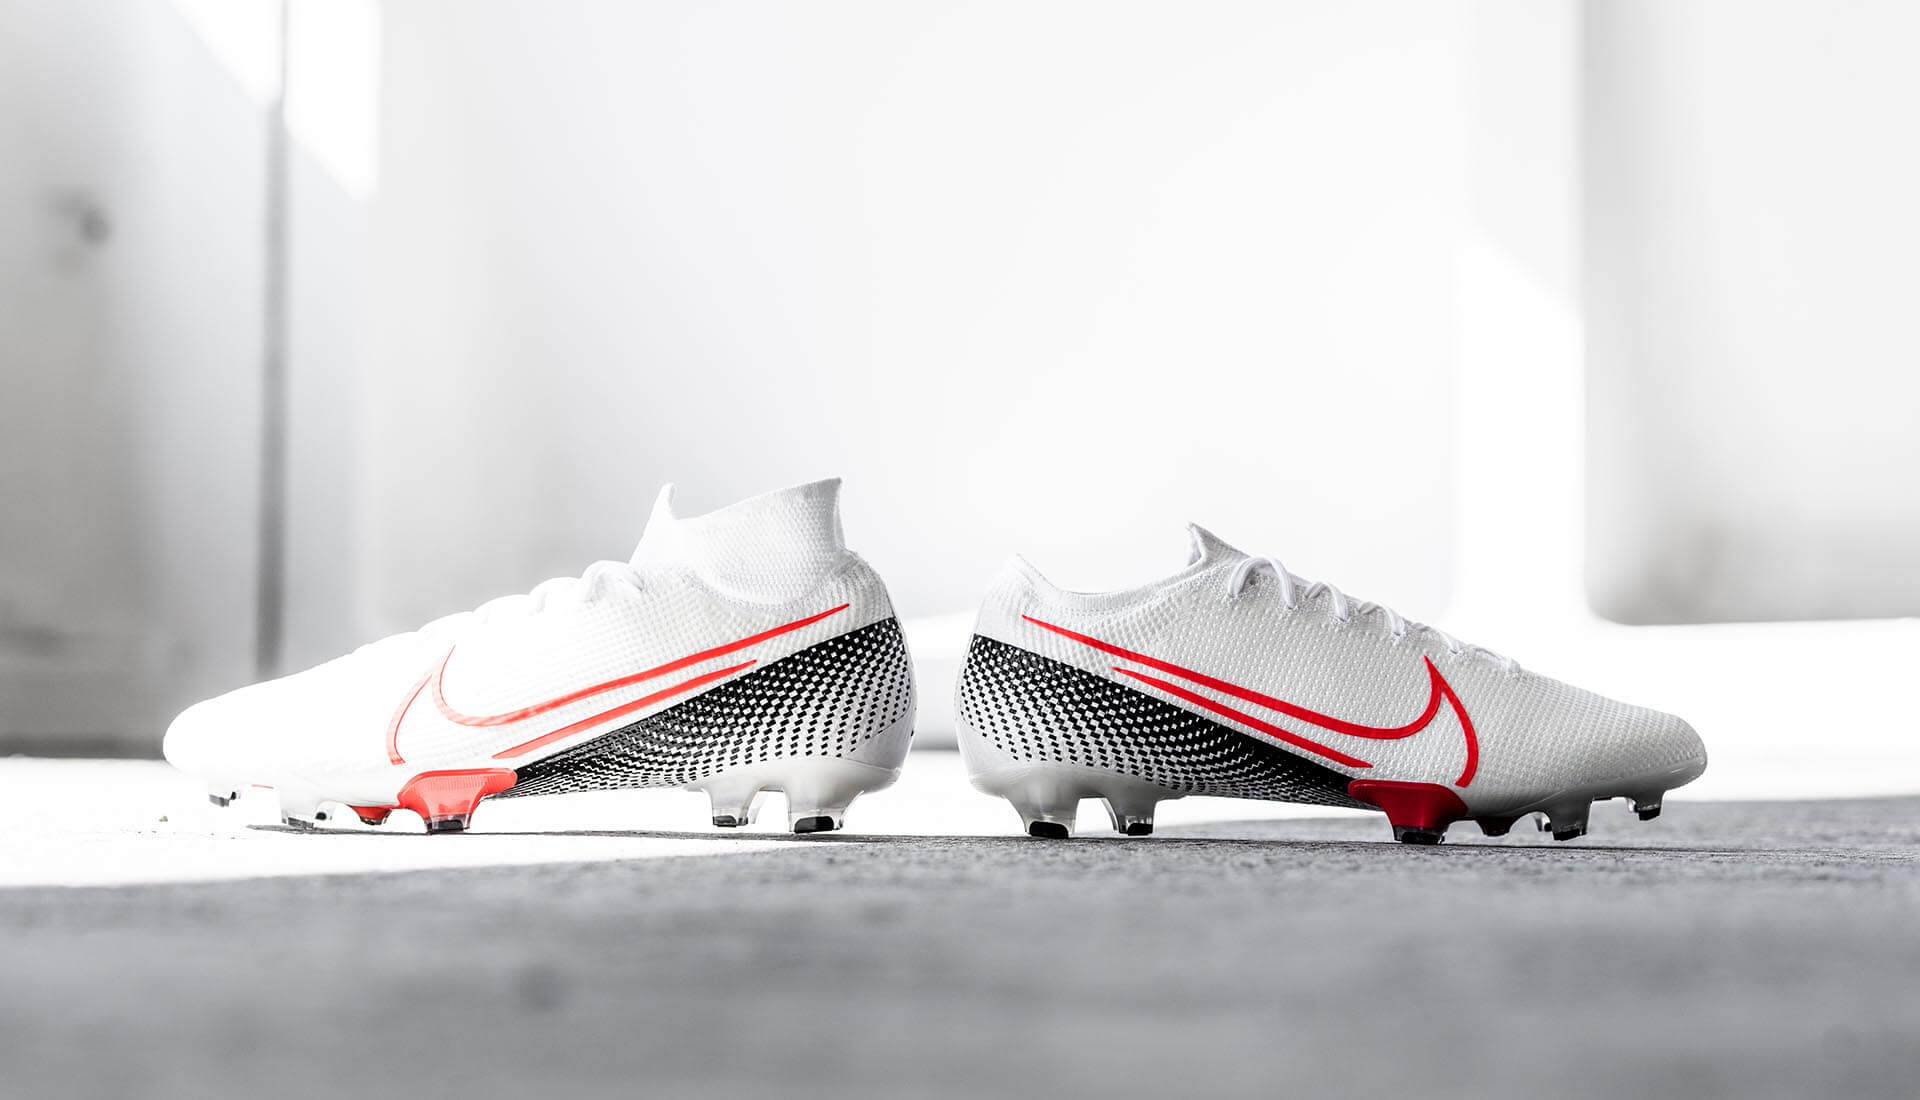 Ra mắt giày bóng đá Nike Future Lab II 2020